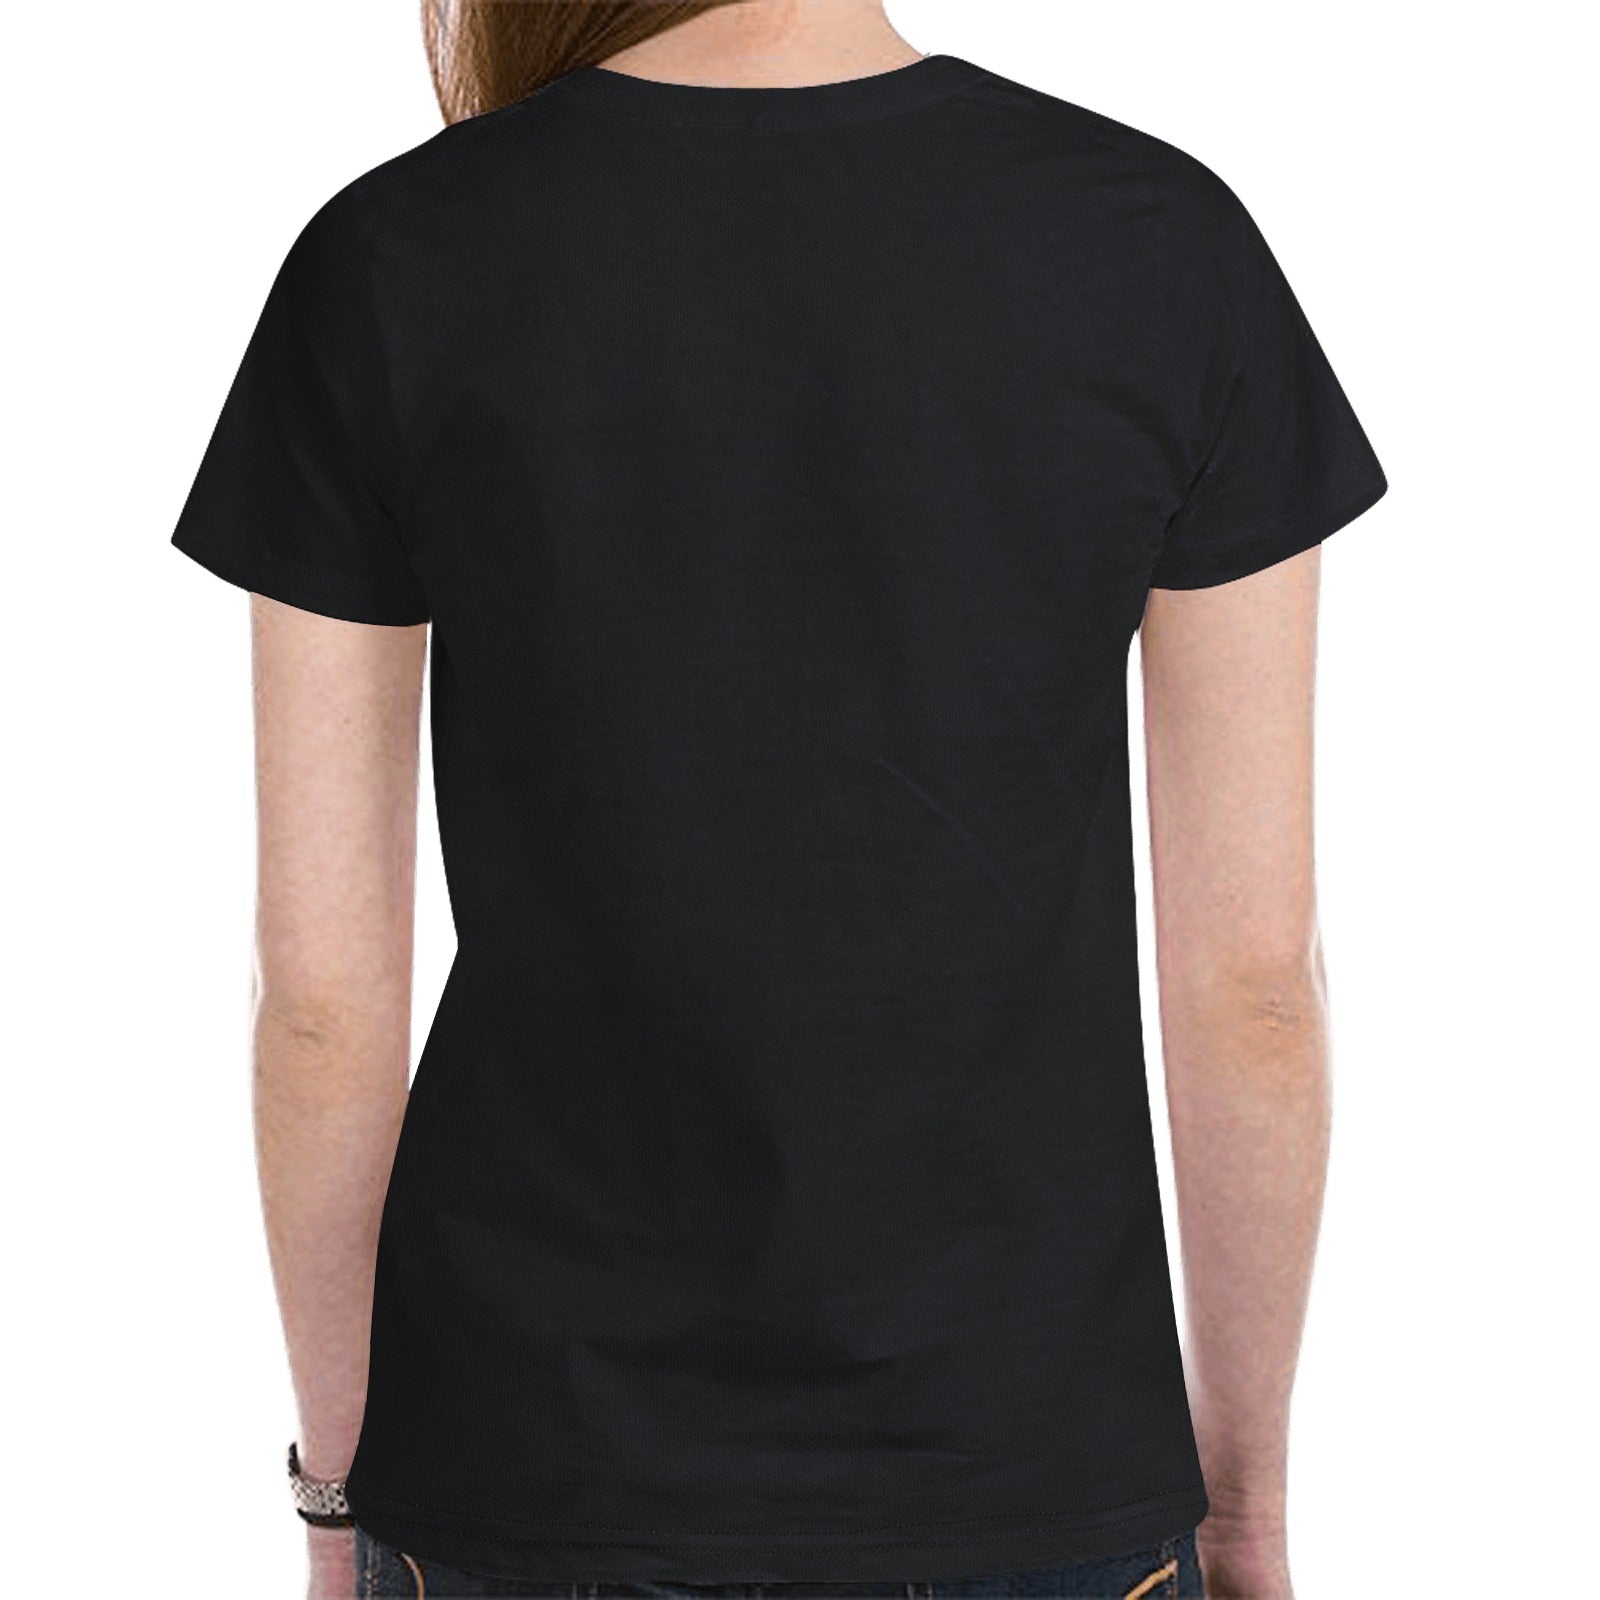 Elk Spirit Guide (Black) T-shirt for Women